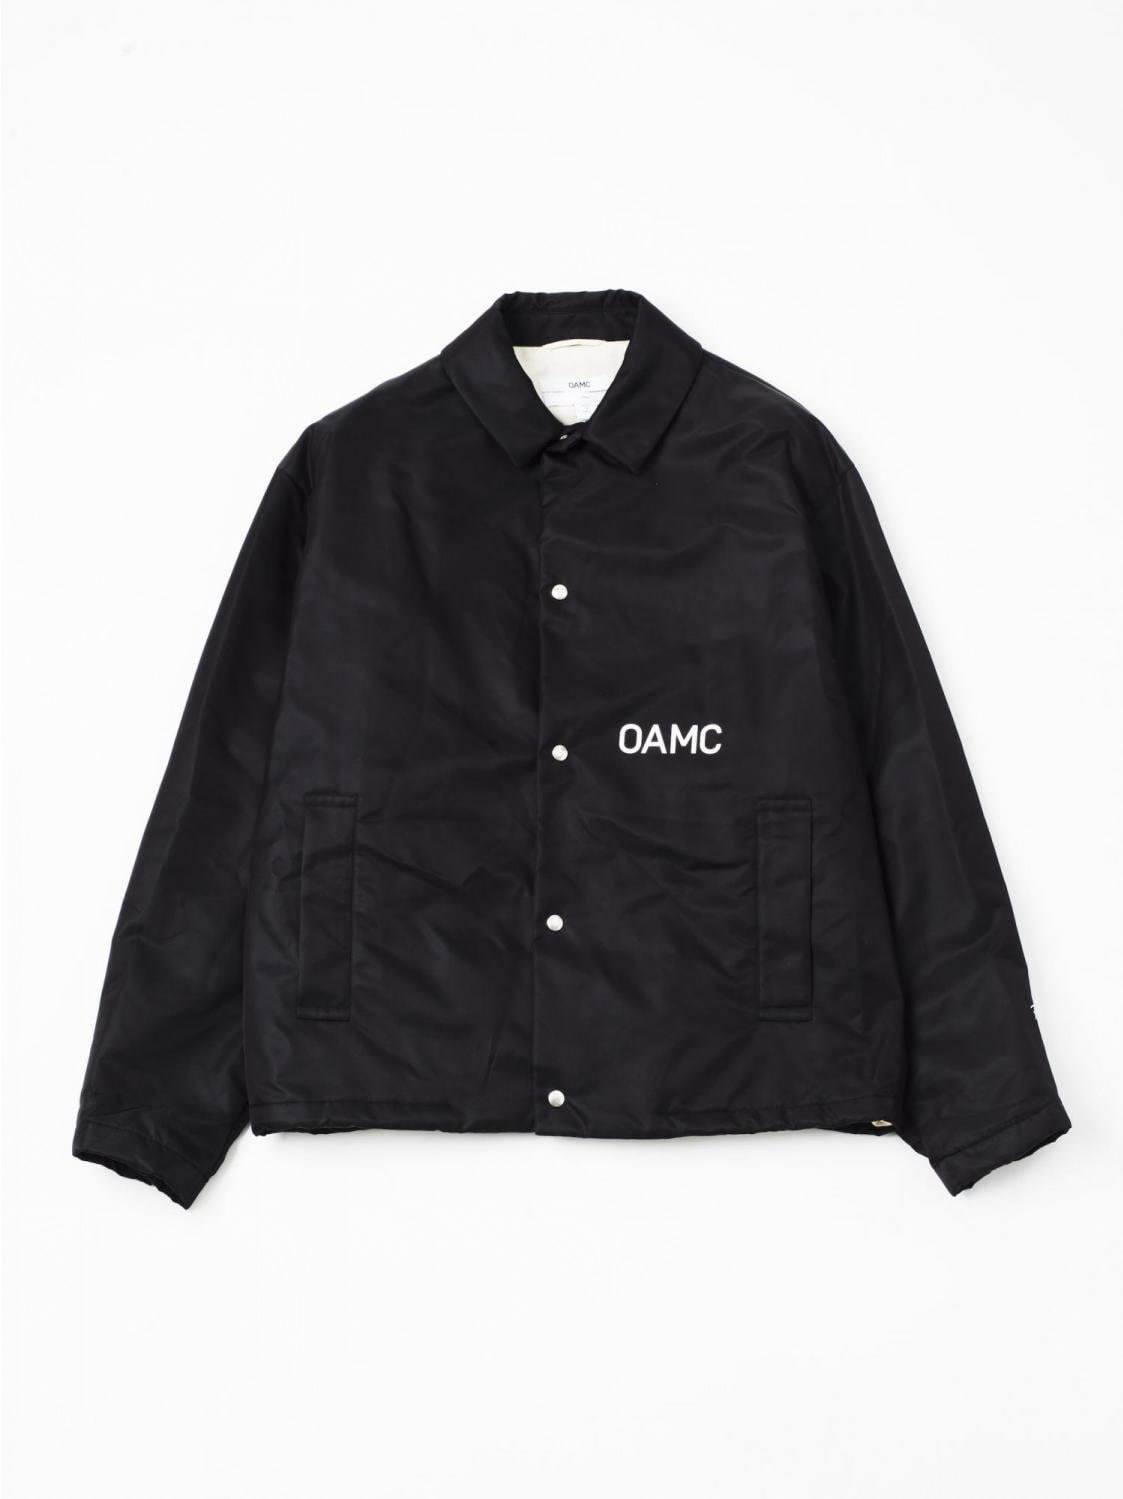 OAMCショースタッフ着用のユニフォーム、ロンハーマン10周年